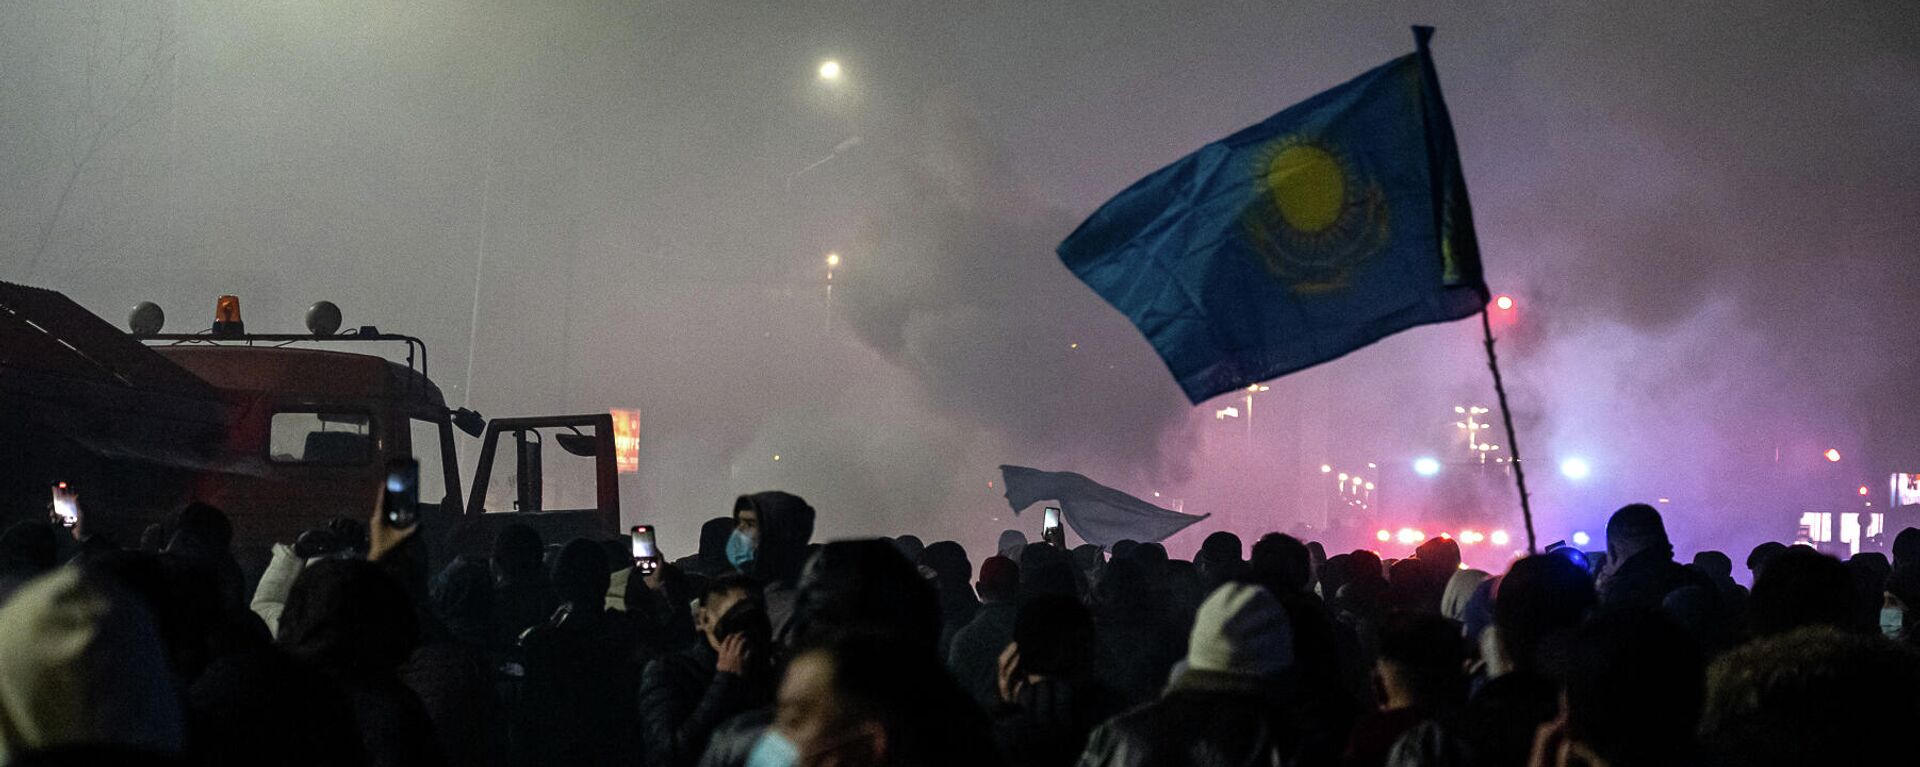 Протестующие на митинге в Алматы после повышения цен на энергоносители. Архивное фото - Sputnik Кыргызстан, 1920, 14.07.2022